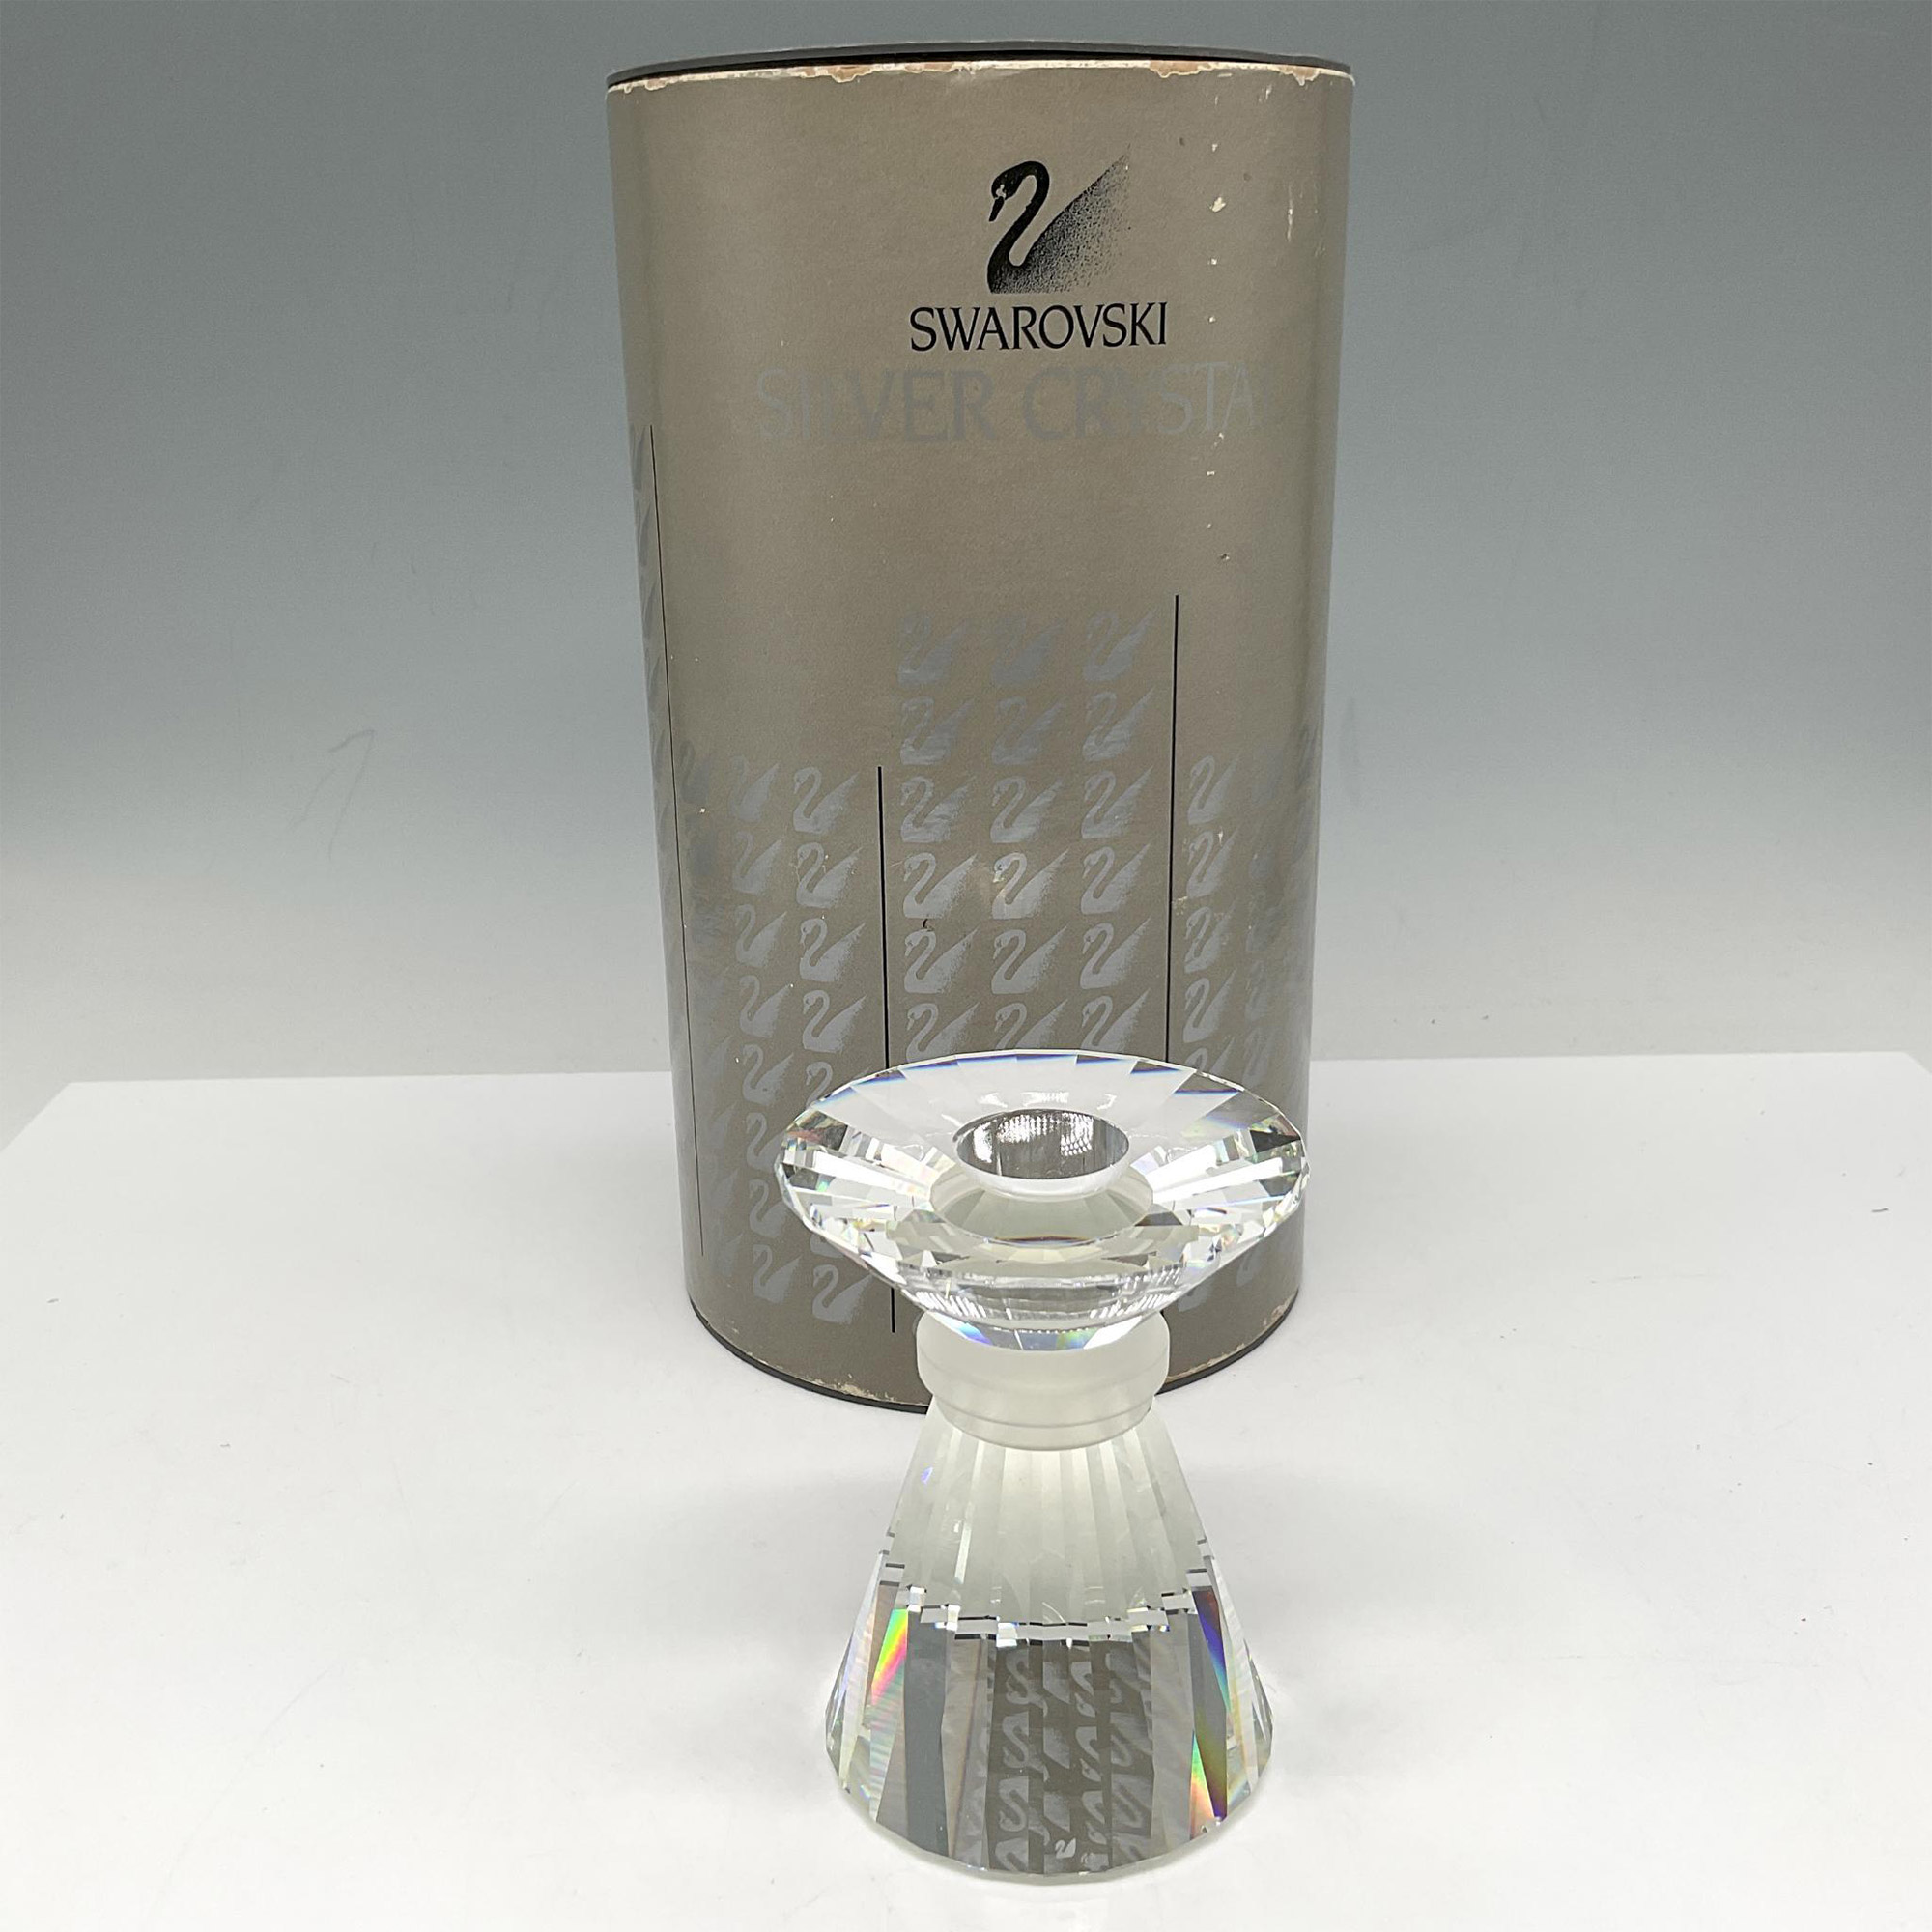 Swarovski Silver Crystal Candle Holder - Image 3 of 3